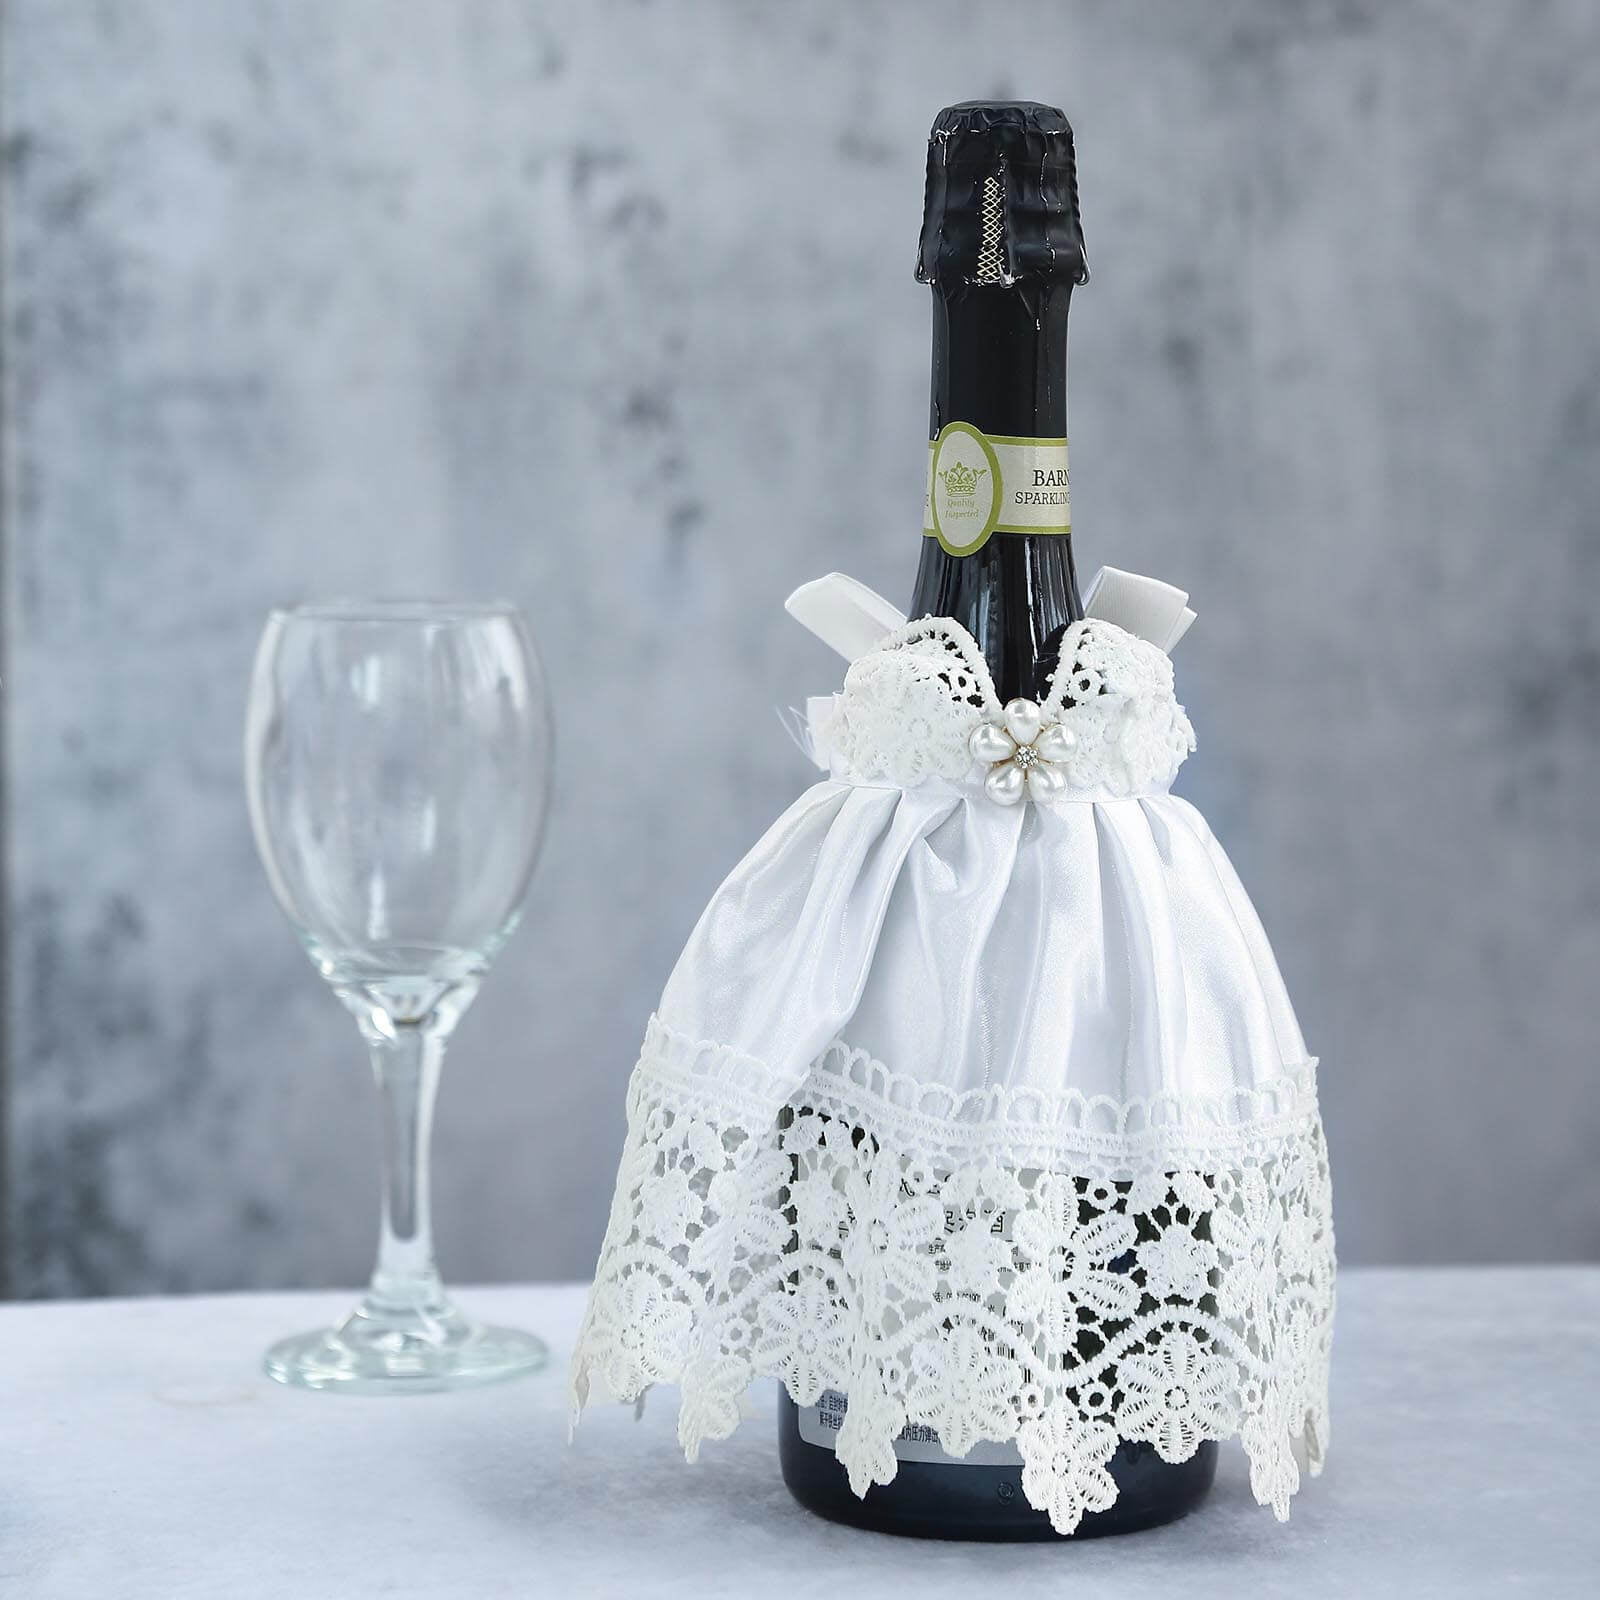 White Bridal Wedding Dress Wine Bottle Koozie, Bottle Cover Sleeve 8